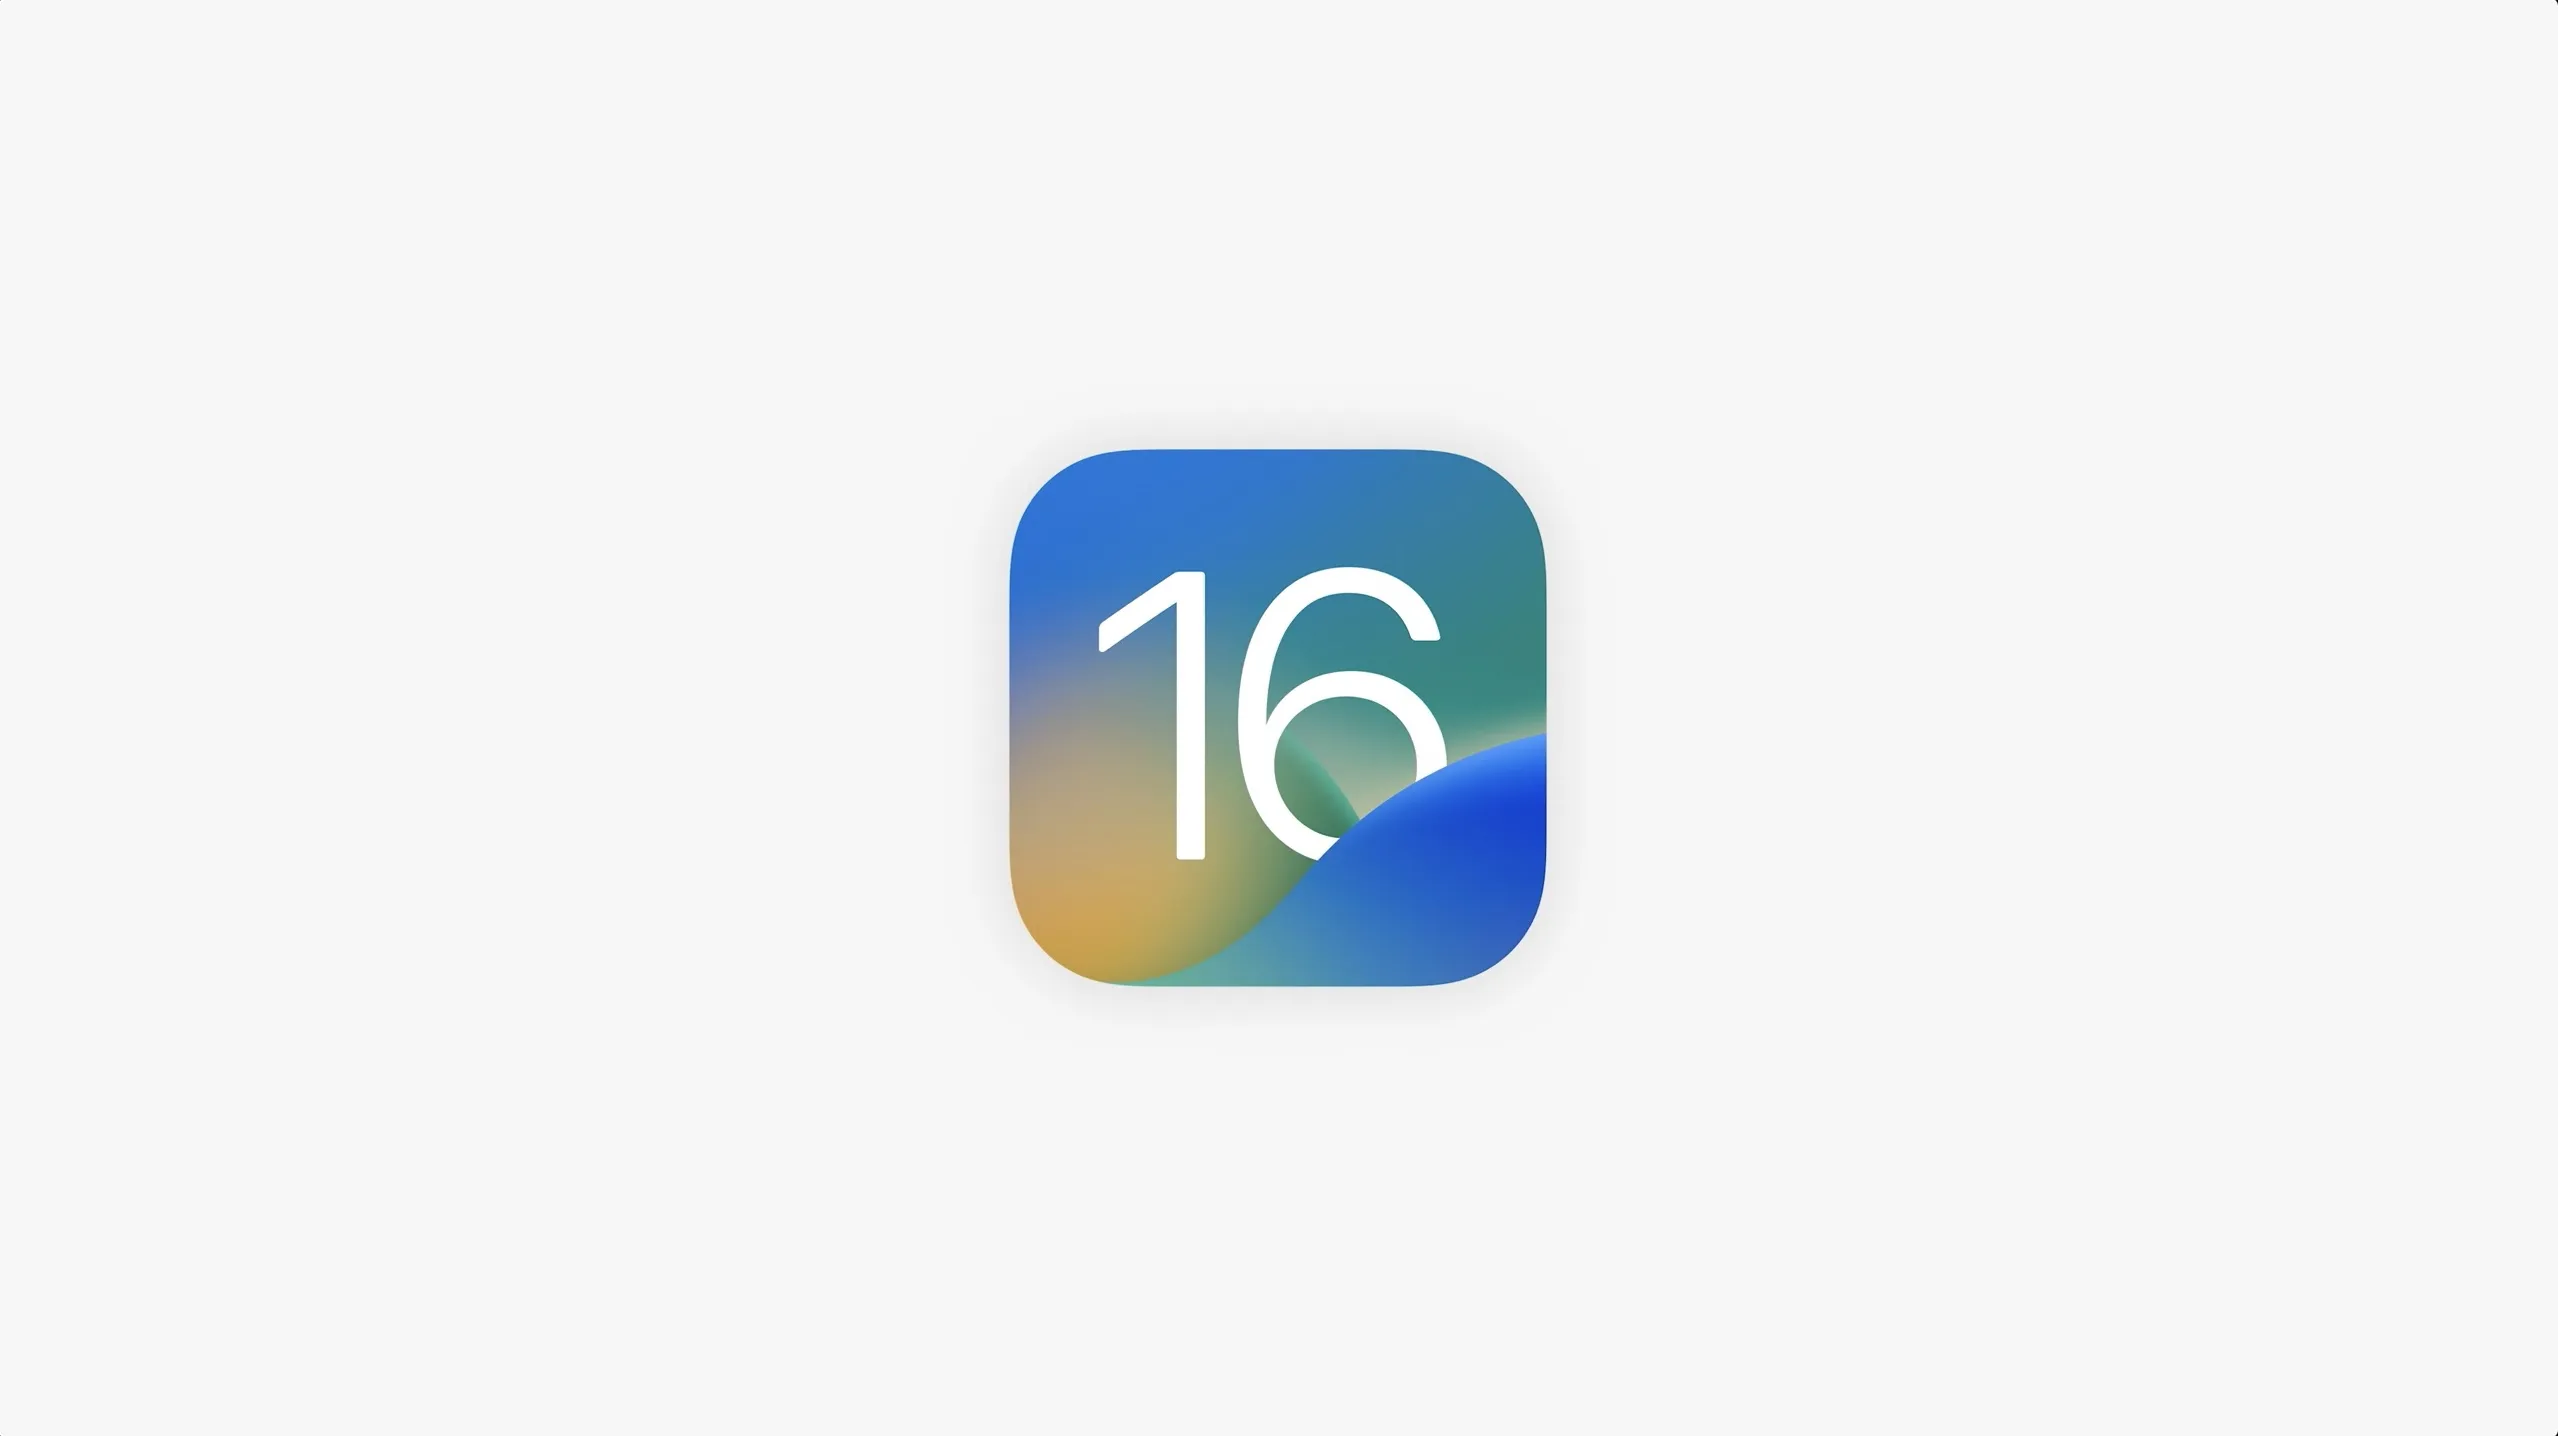 Обзор новых функций Apple, которые появятся в iOS 16.2, iPadOS 16.2, macOS Ventura 13.1, watchOS 9.2 и tvOS 16.2.